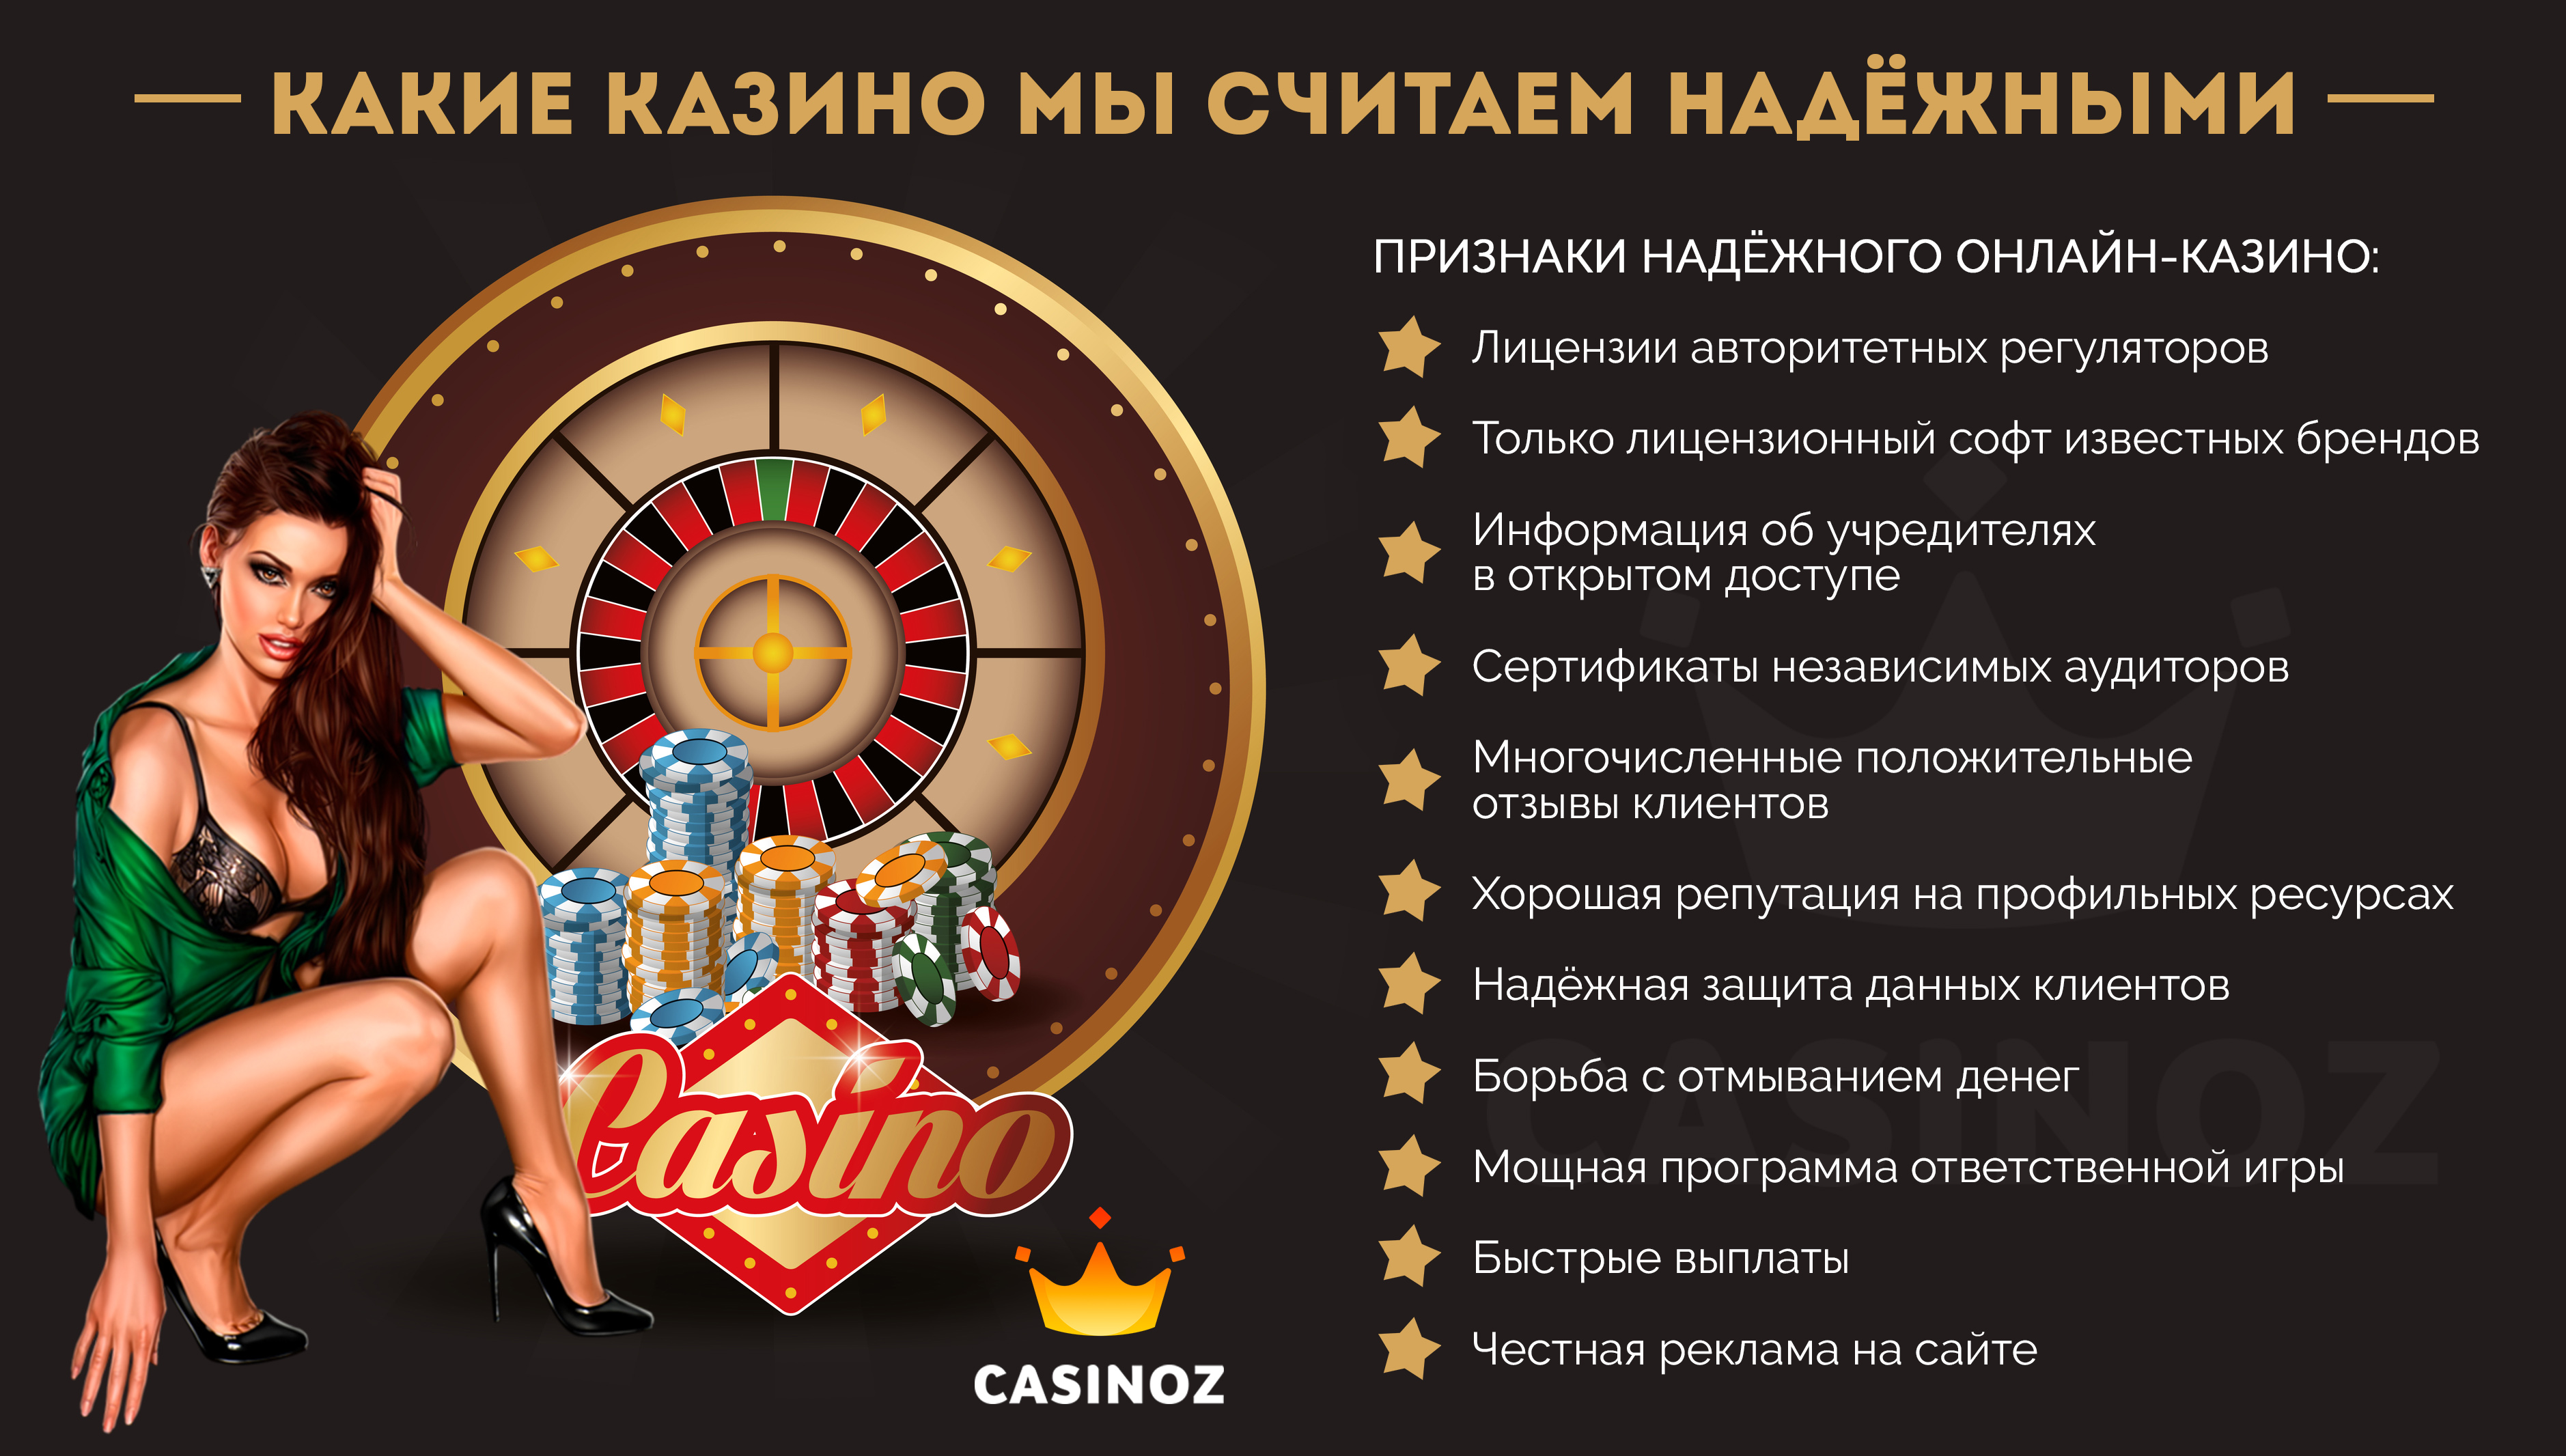 Надежные онлайн казино top reiting kazino2 com проверка билета столото 1430